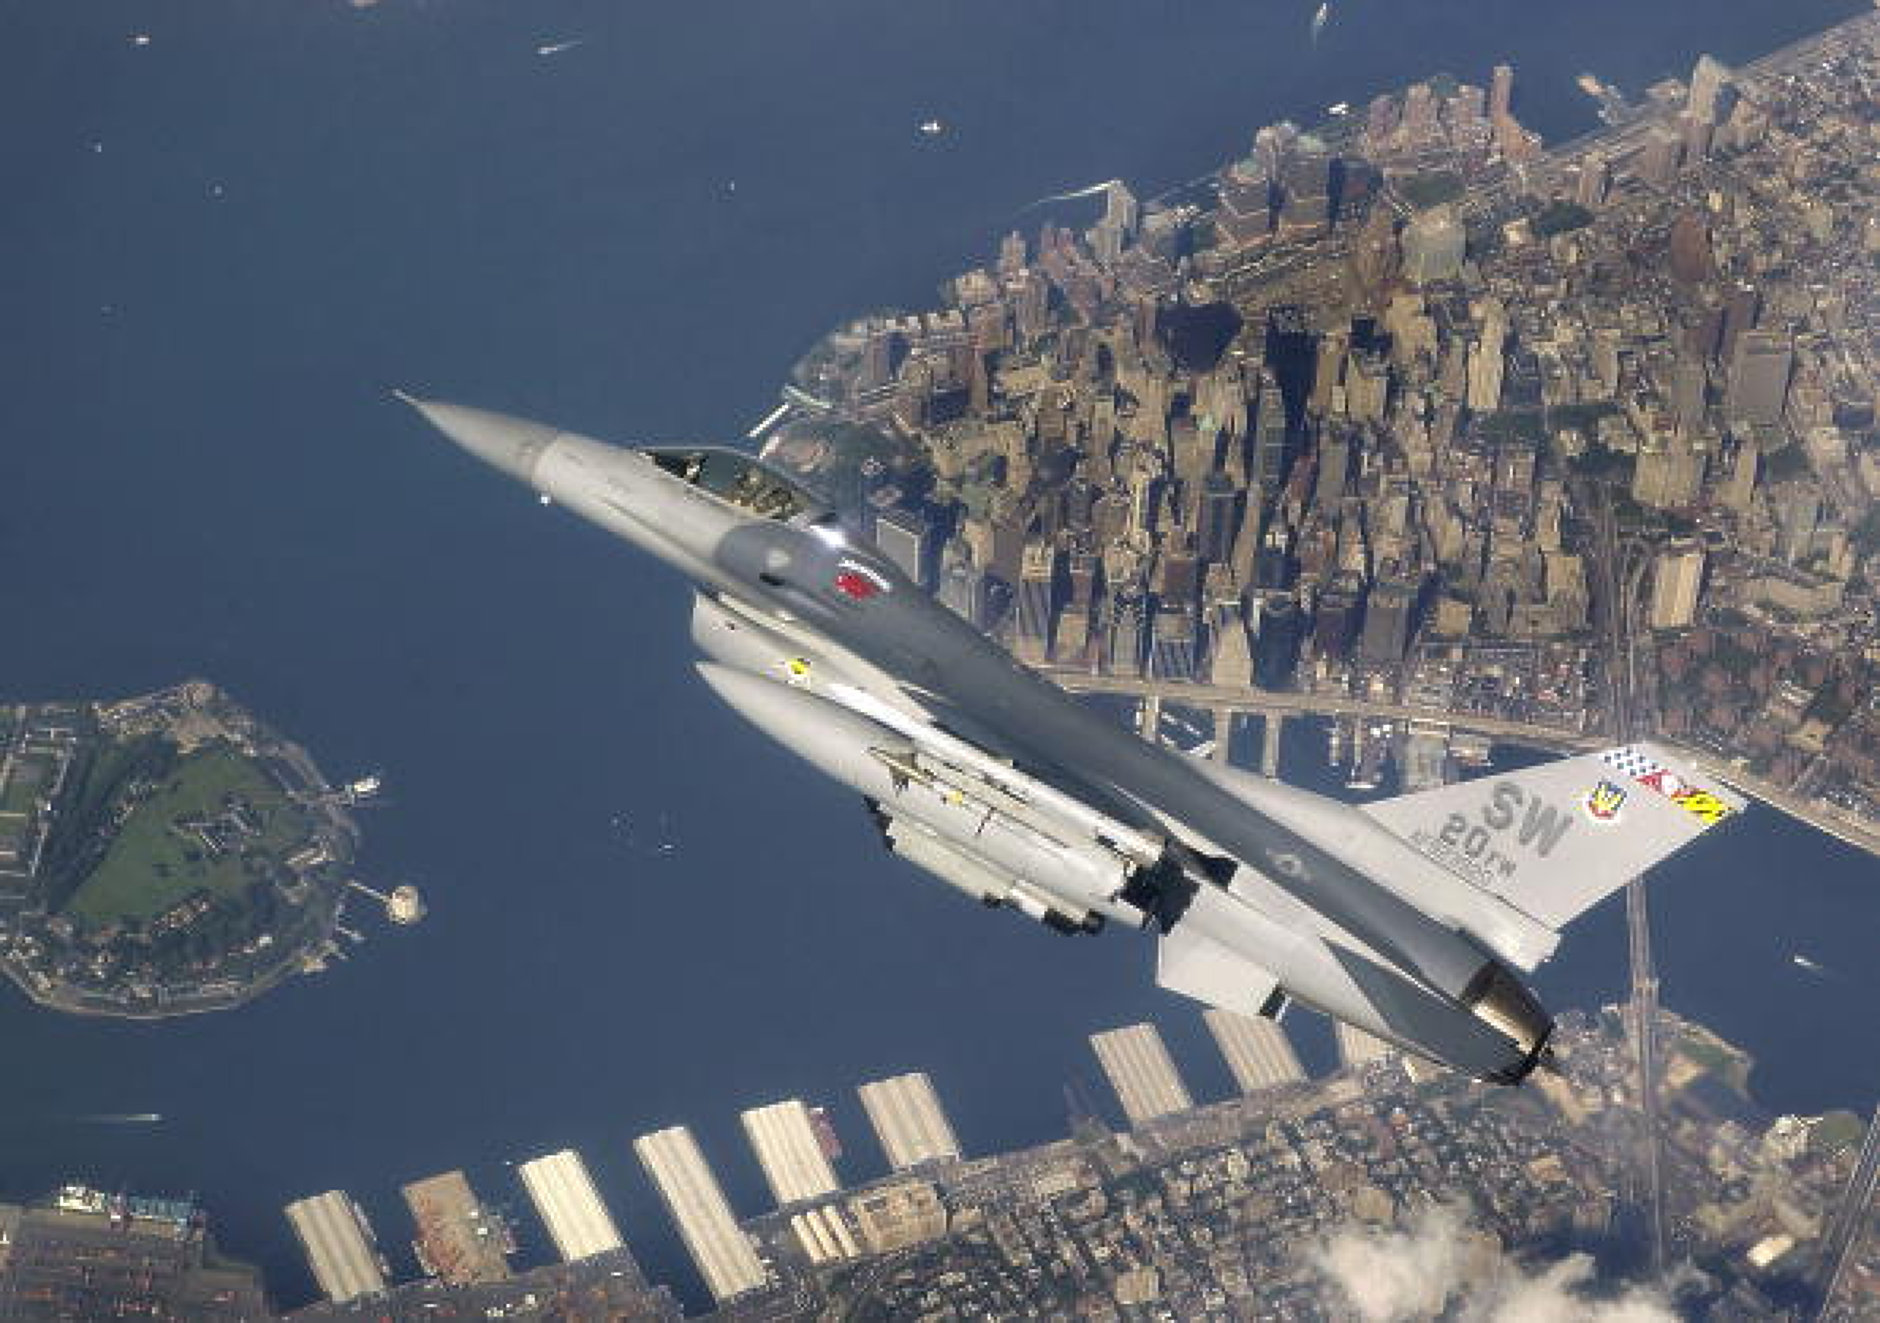 Изтребител F-16 летя 17 часа под контрола на изкуствен интелект